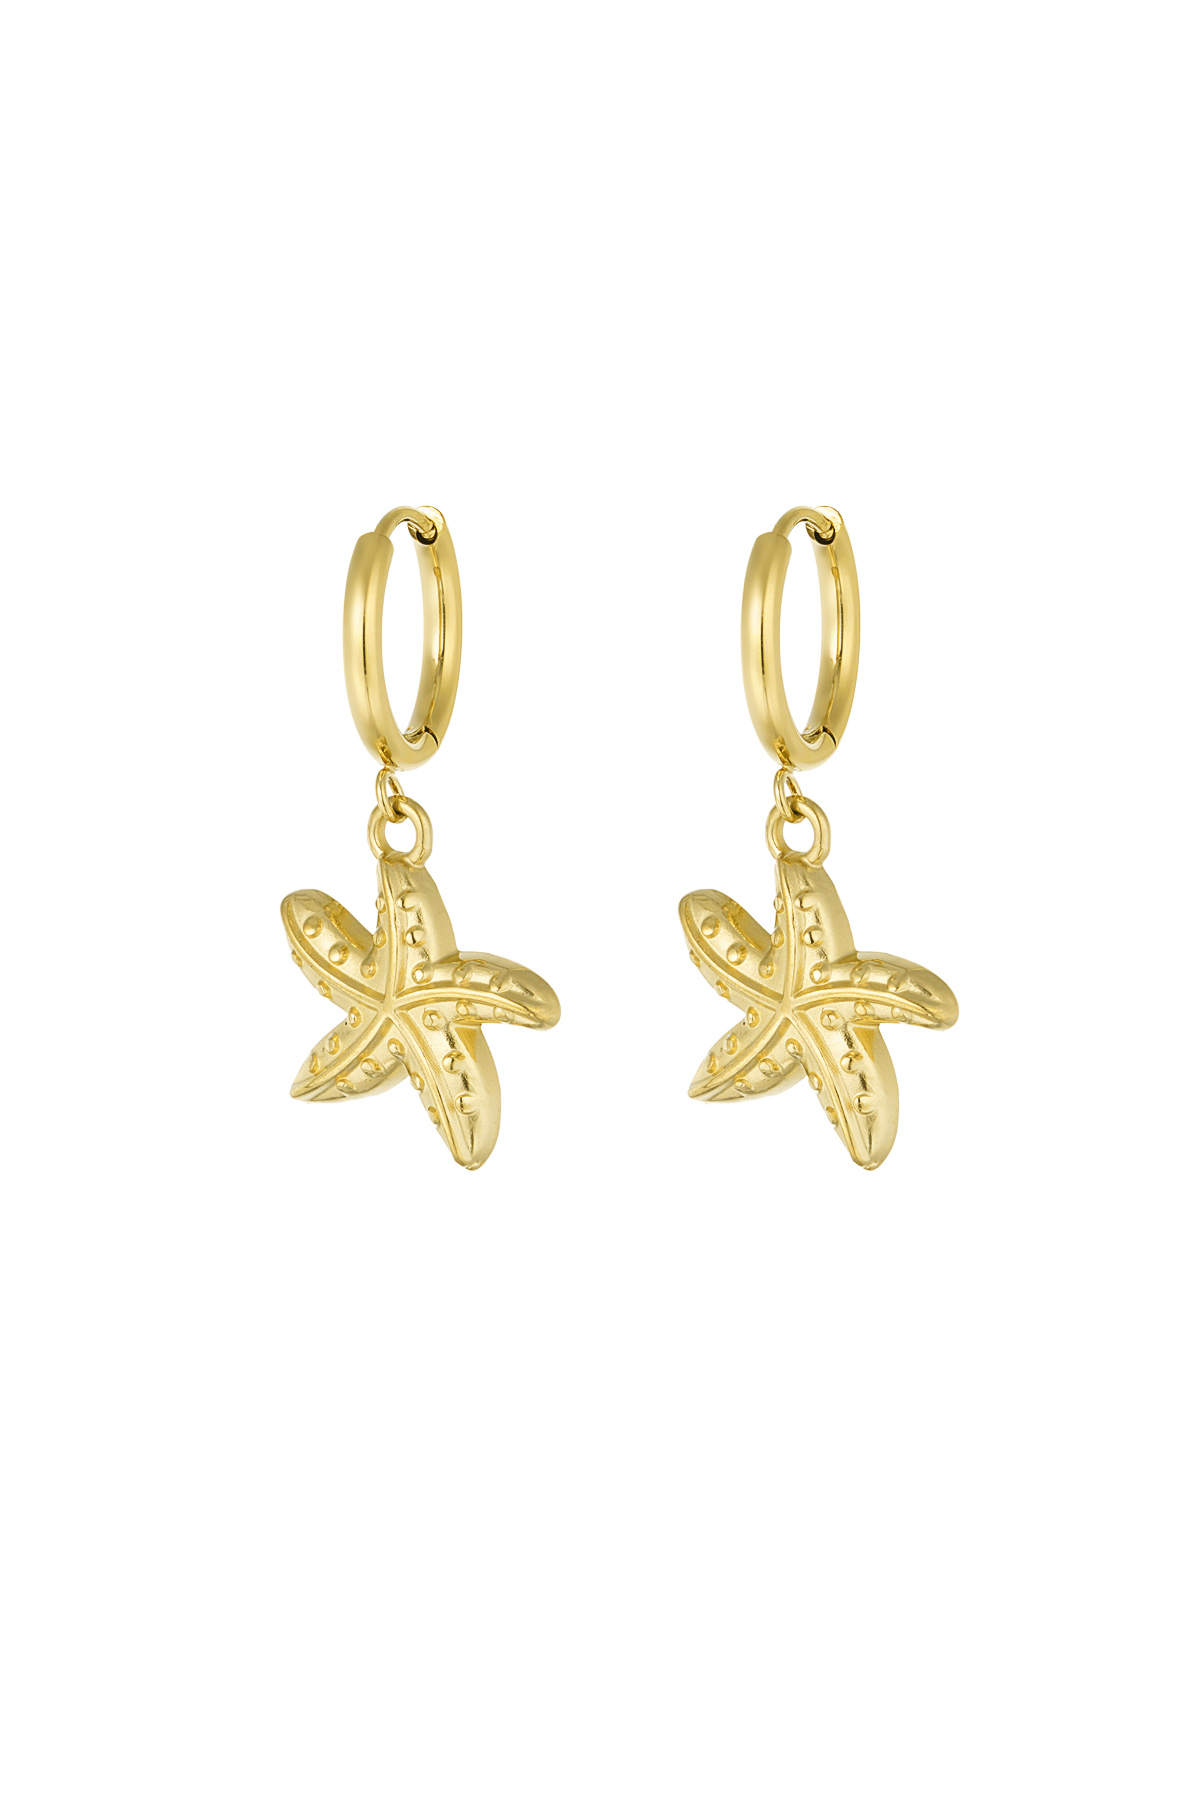 Boucles d'oreilles spécial étoile de mer - doré 